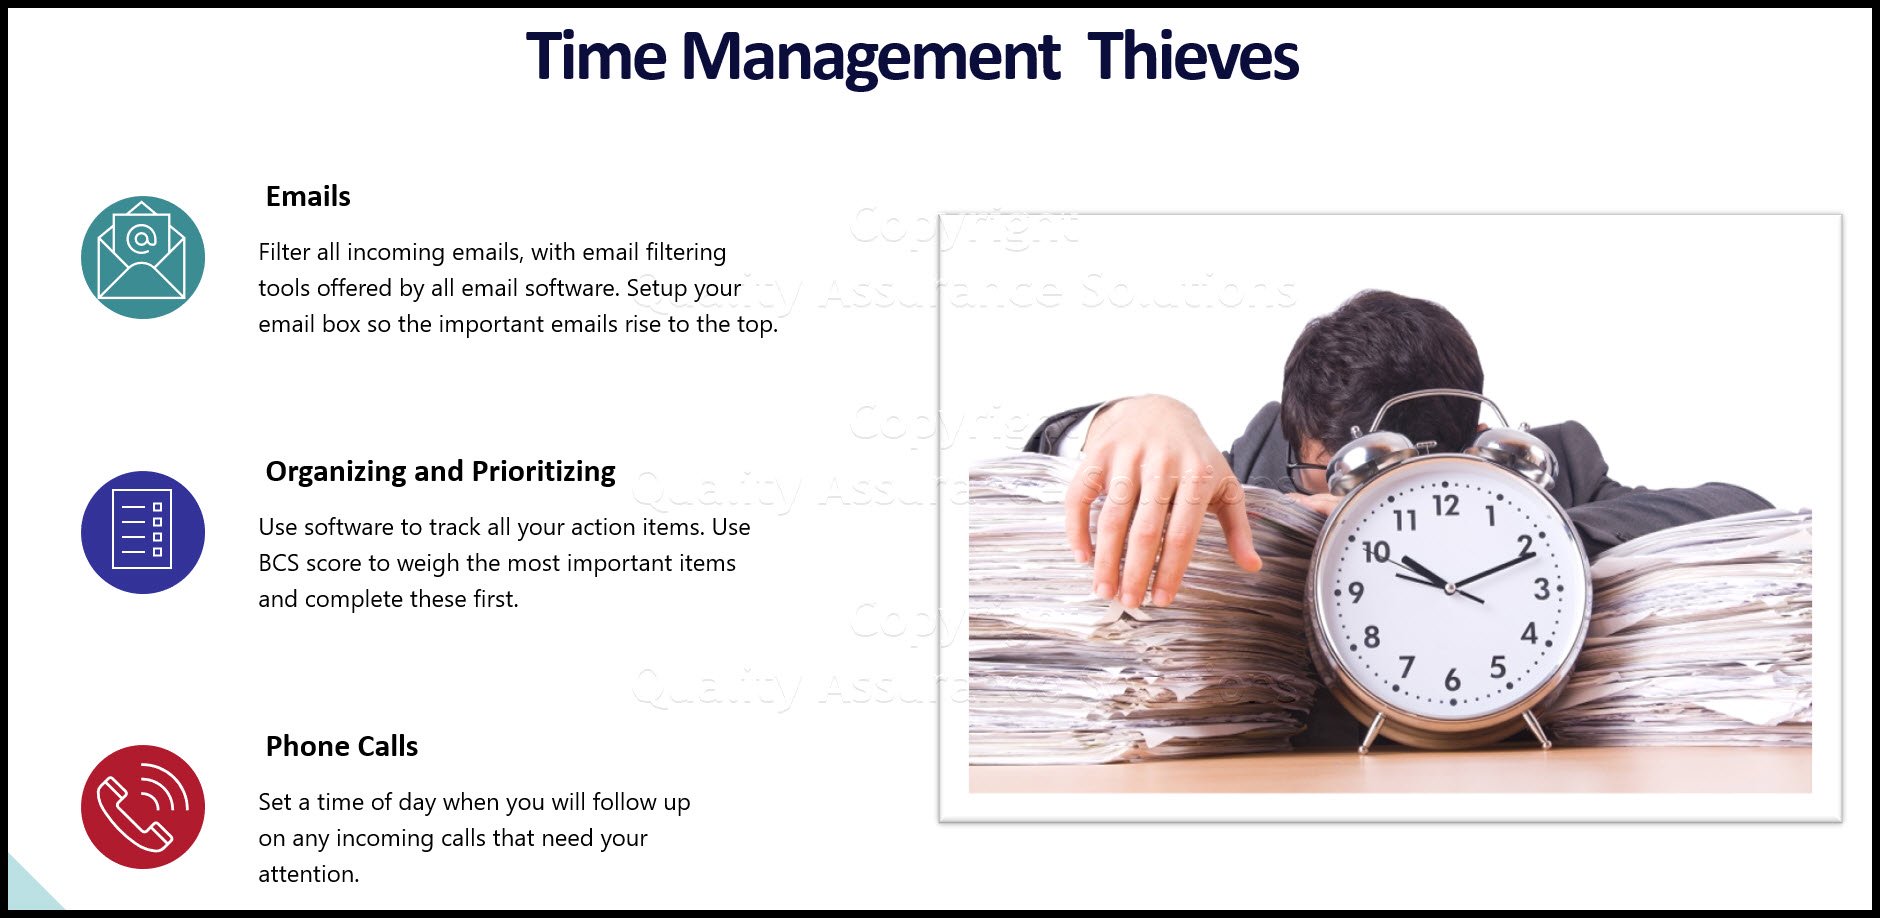 سه نکته برای بهبود مهارت‌های مدیریت زمان شامل حمله به دزد زمان، توقف وقفه‌ها و اولویت‌بندی با ساده‌سازی است.